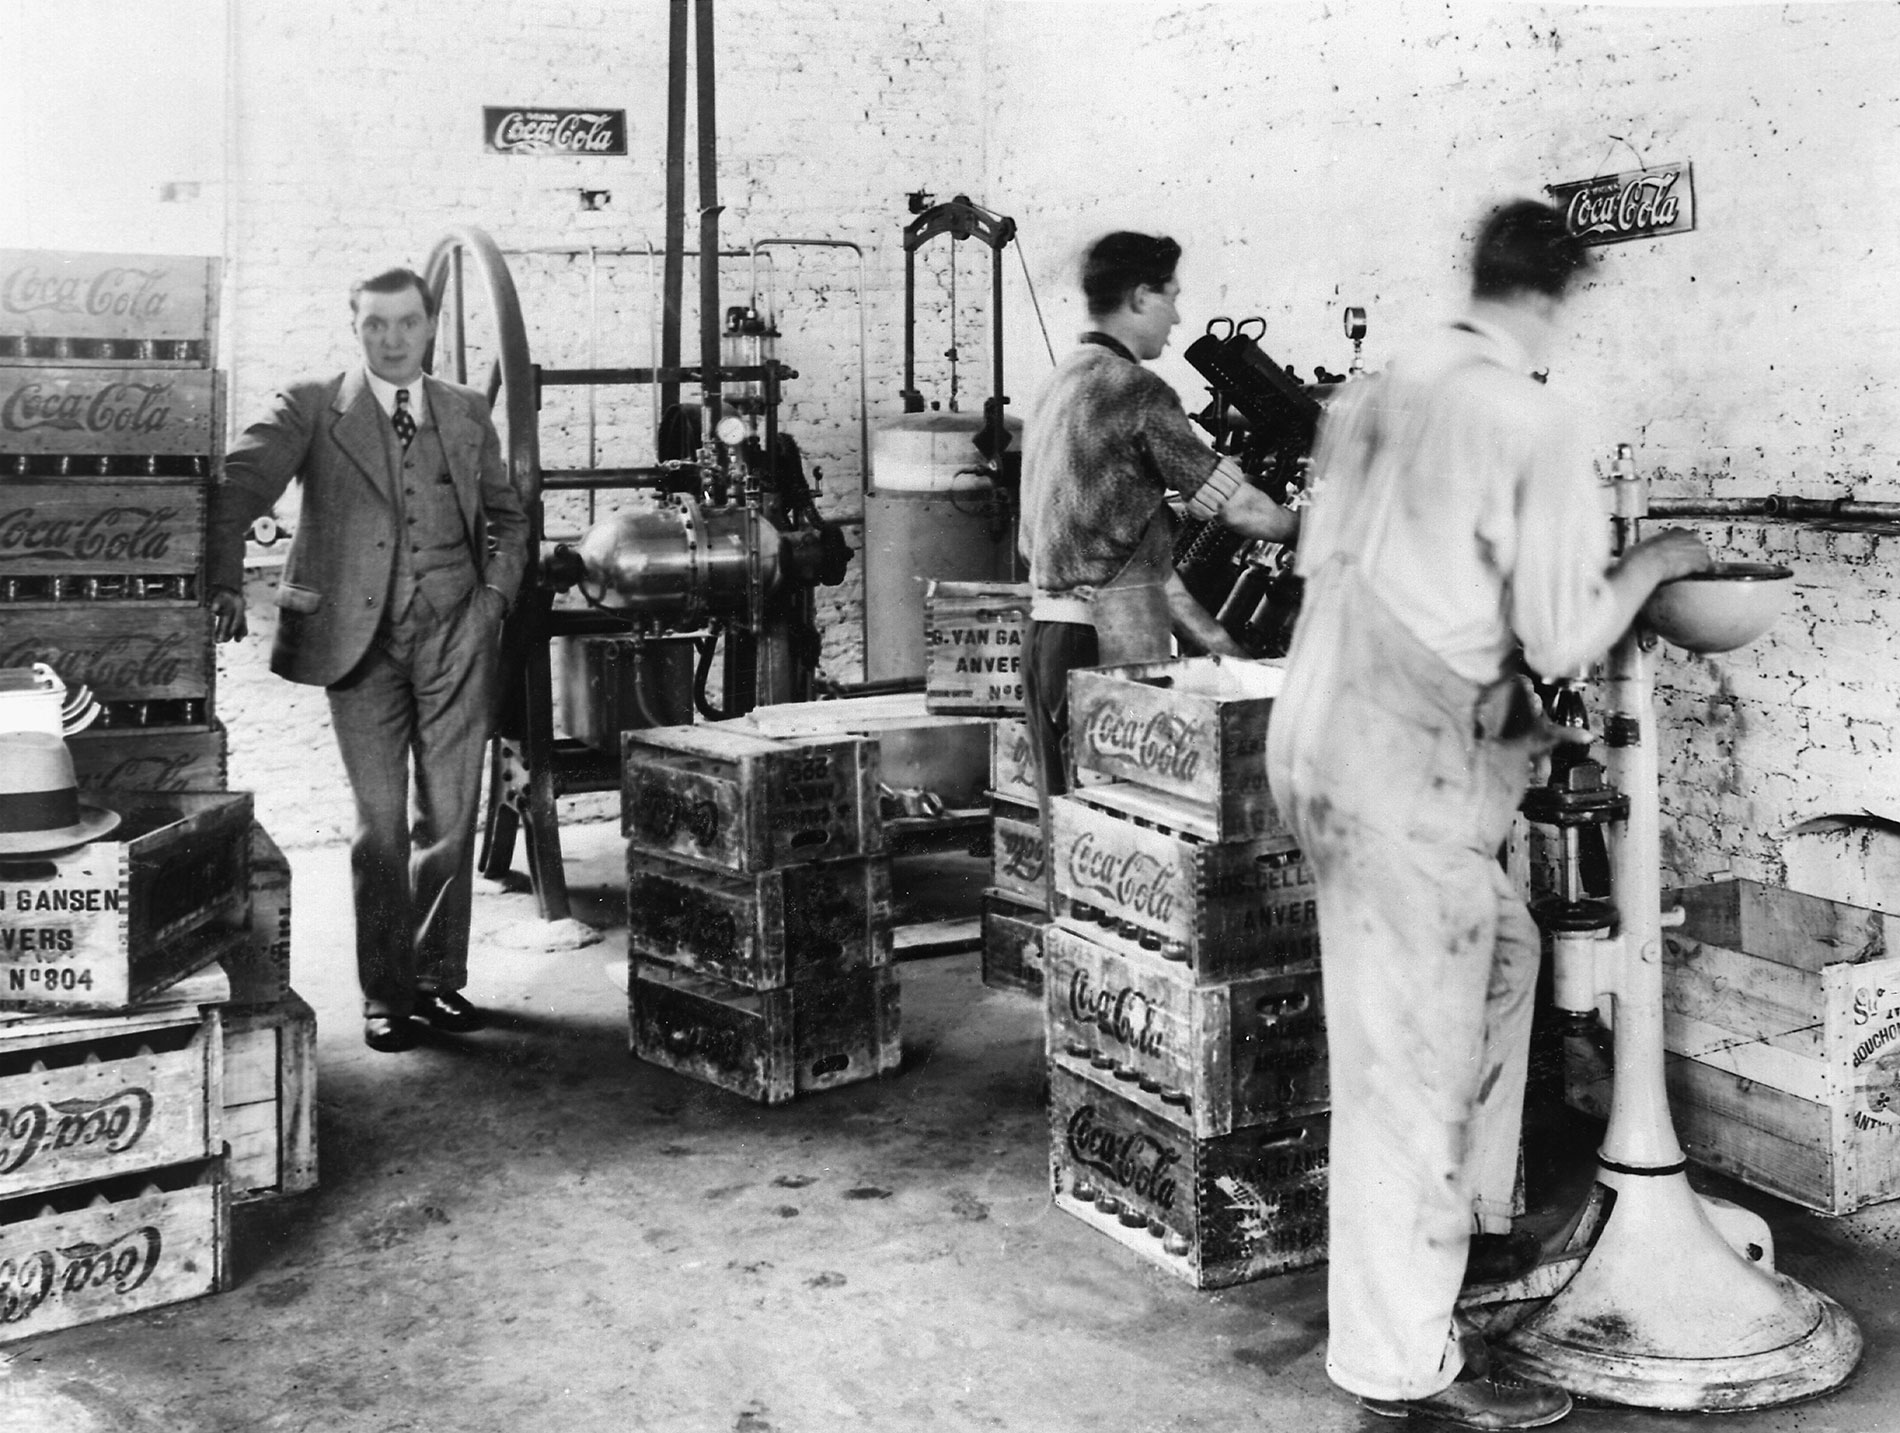 Oude foto van Coca-Cola bottelarij in Antwerpen - gustave van gansen